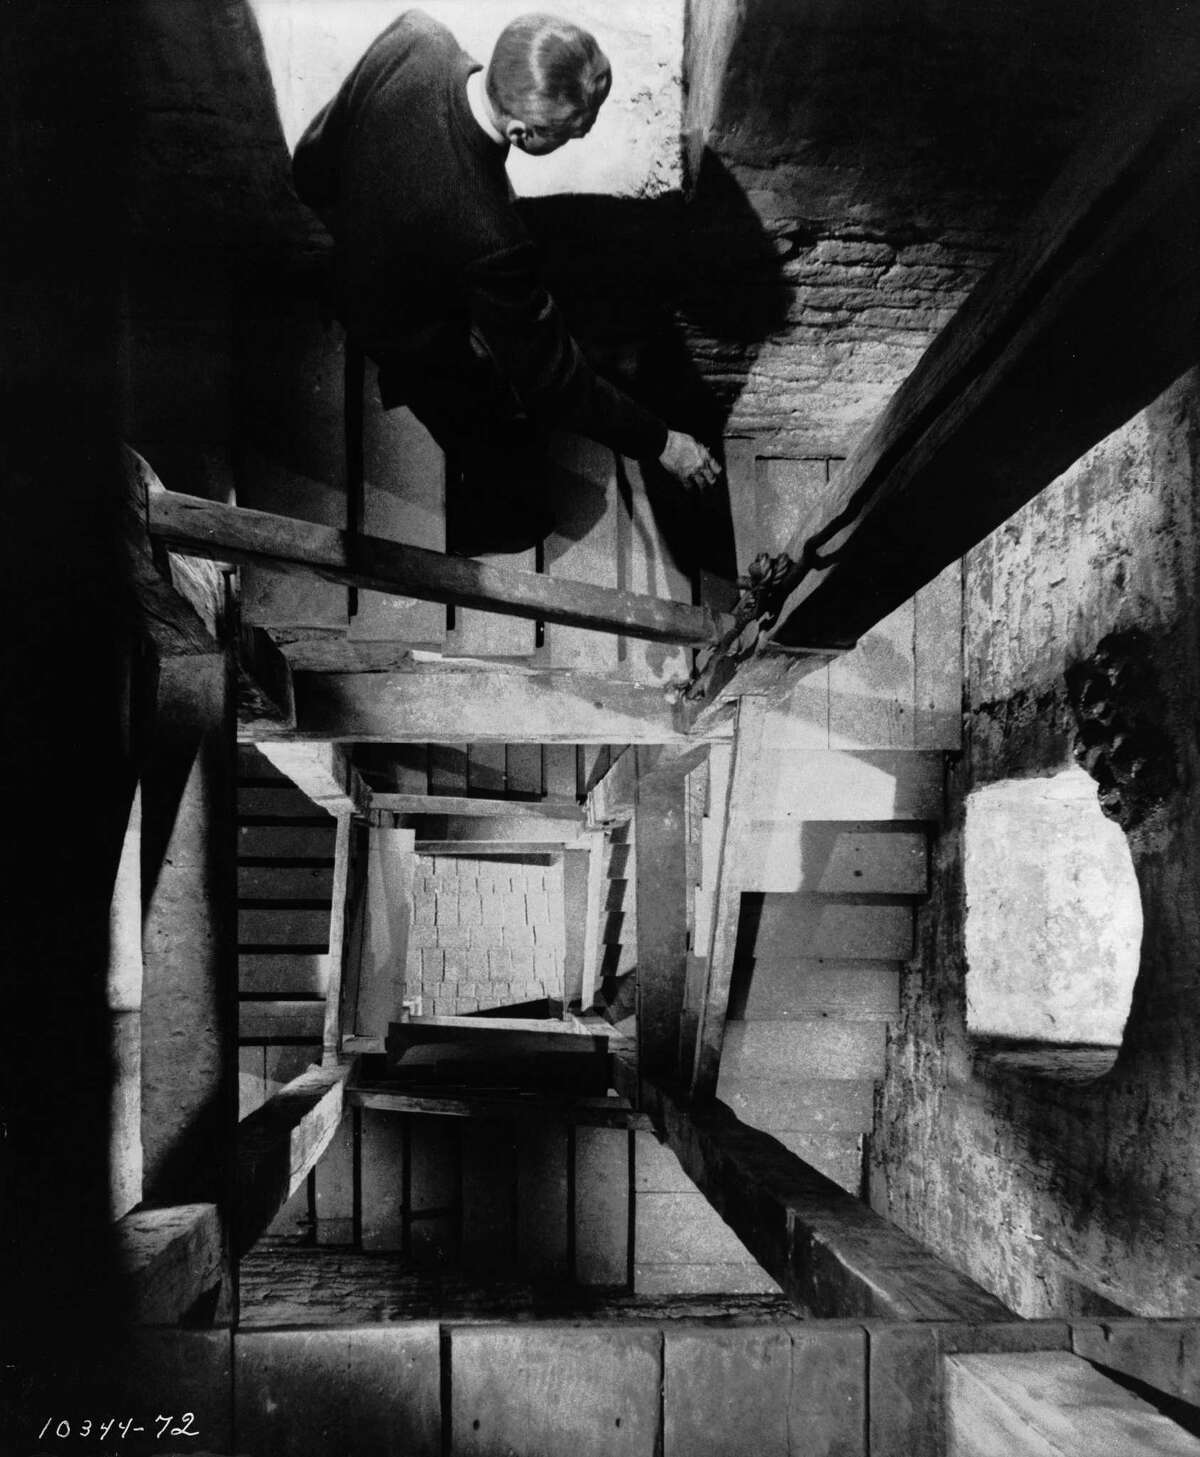 Actor James Stewart, as detective Scottie Ferguson, descends a spiral staircase in the film “Vertigo.”